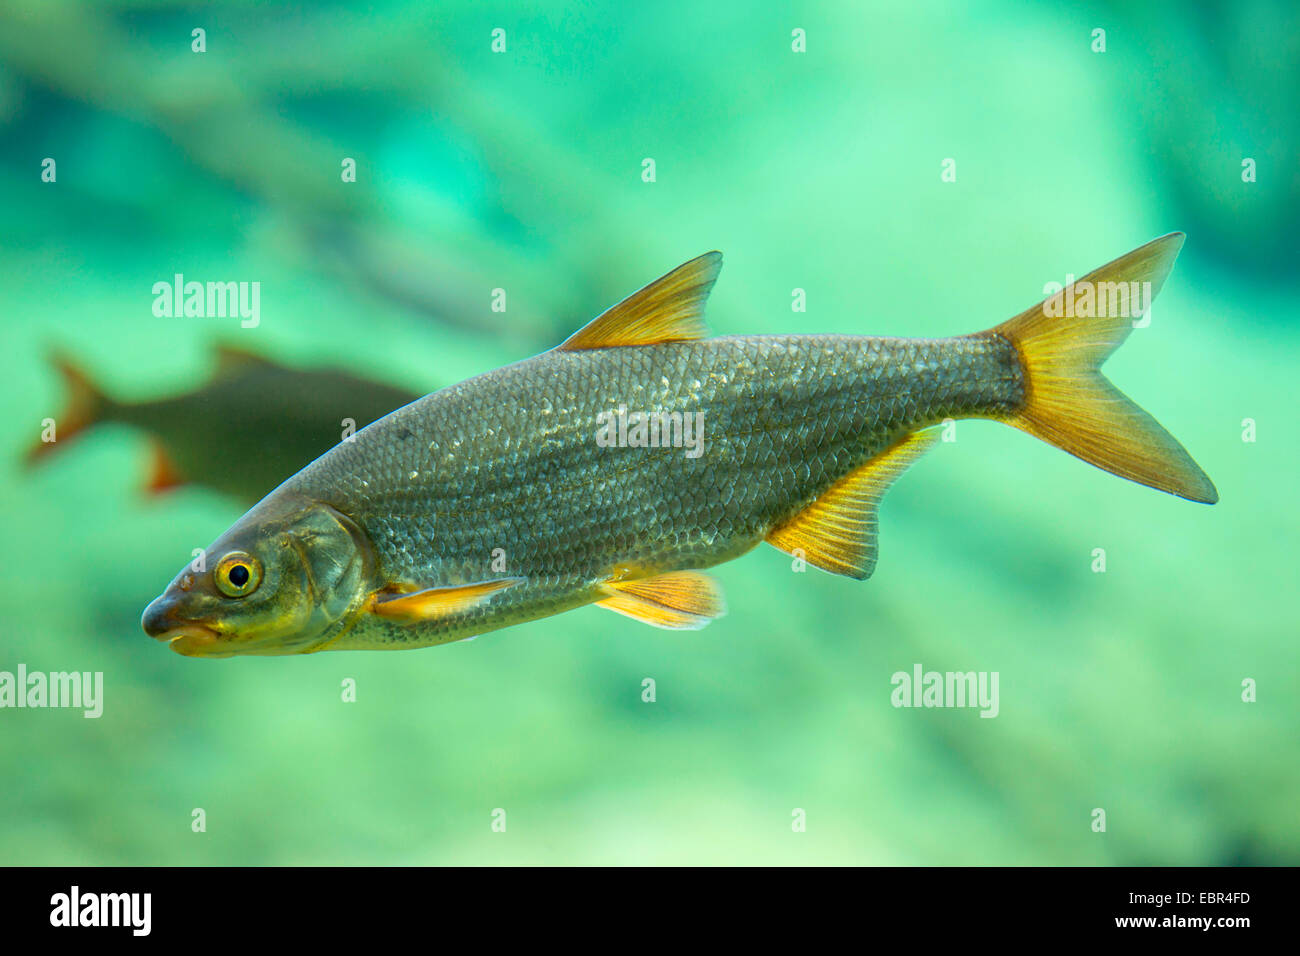 Vimba elongata (Vimba elongata, Abramis elongatus), swimming Stock Photo